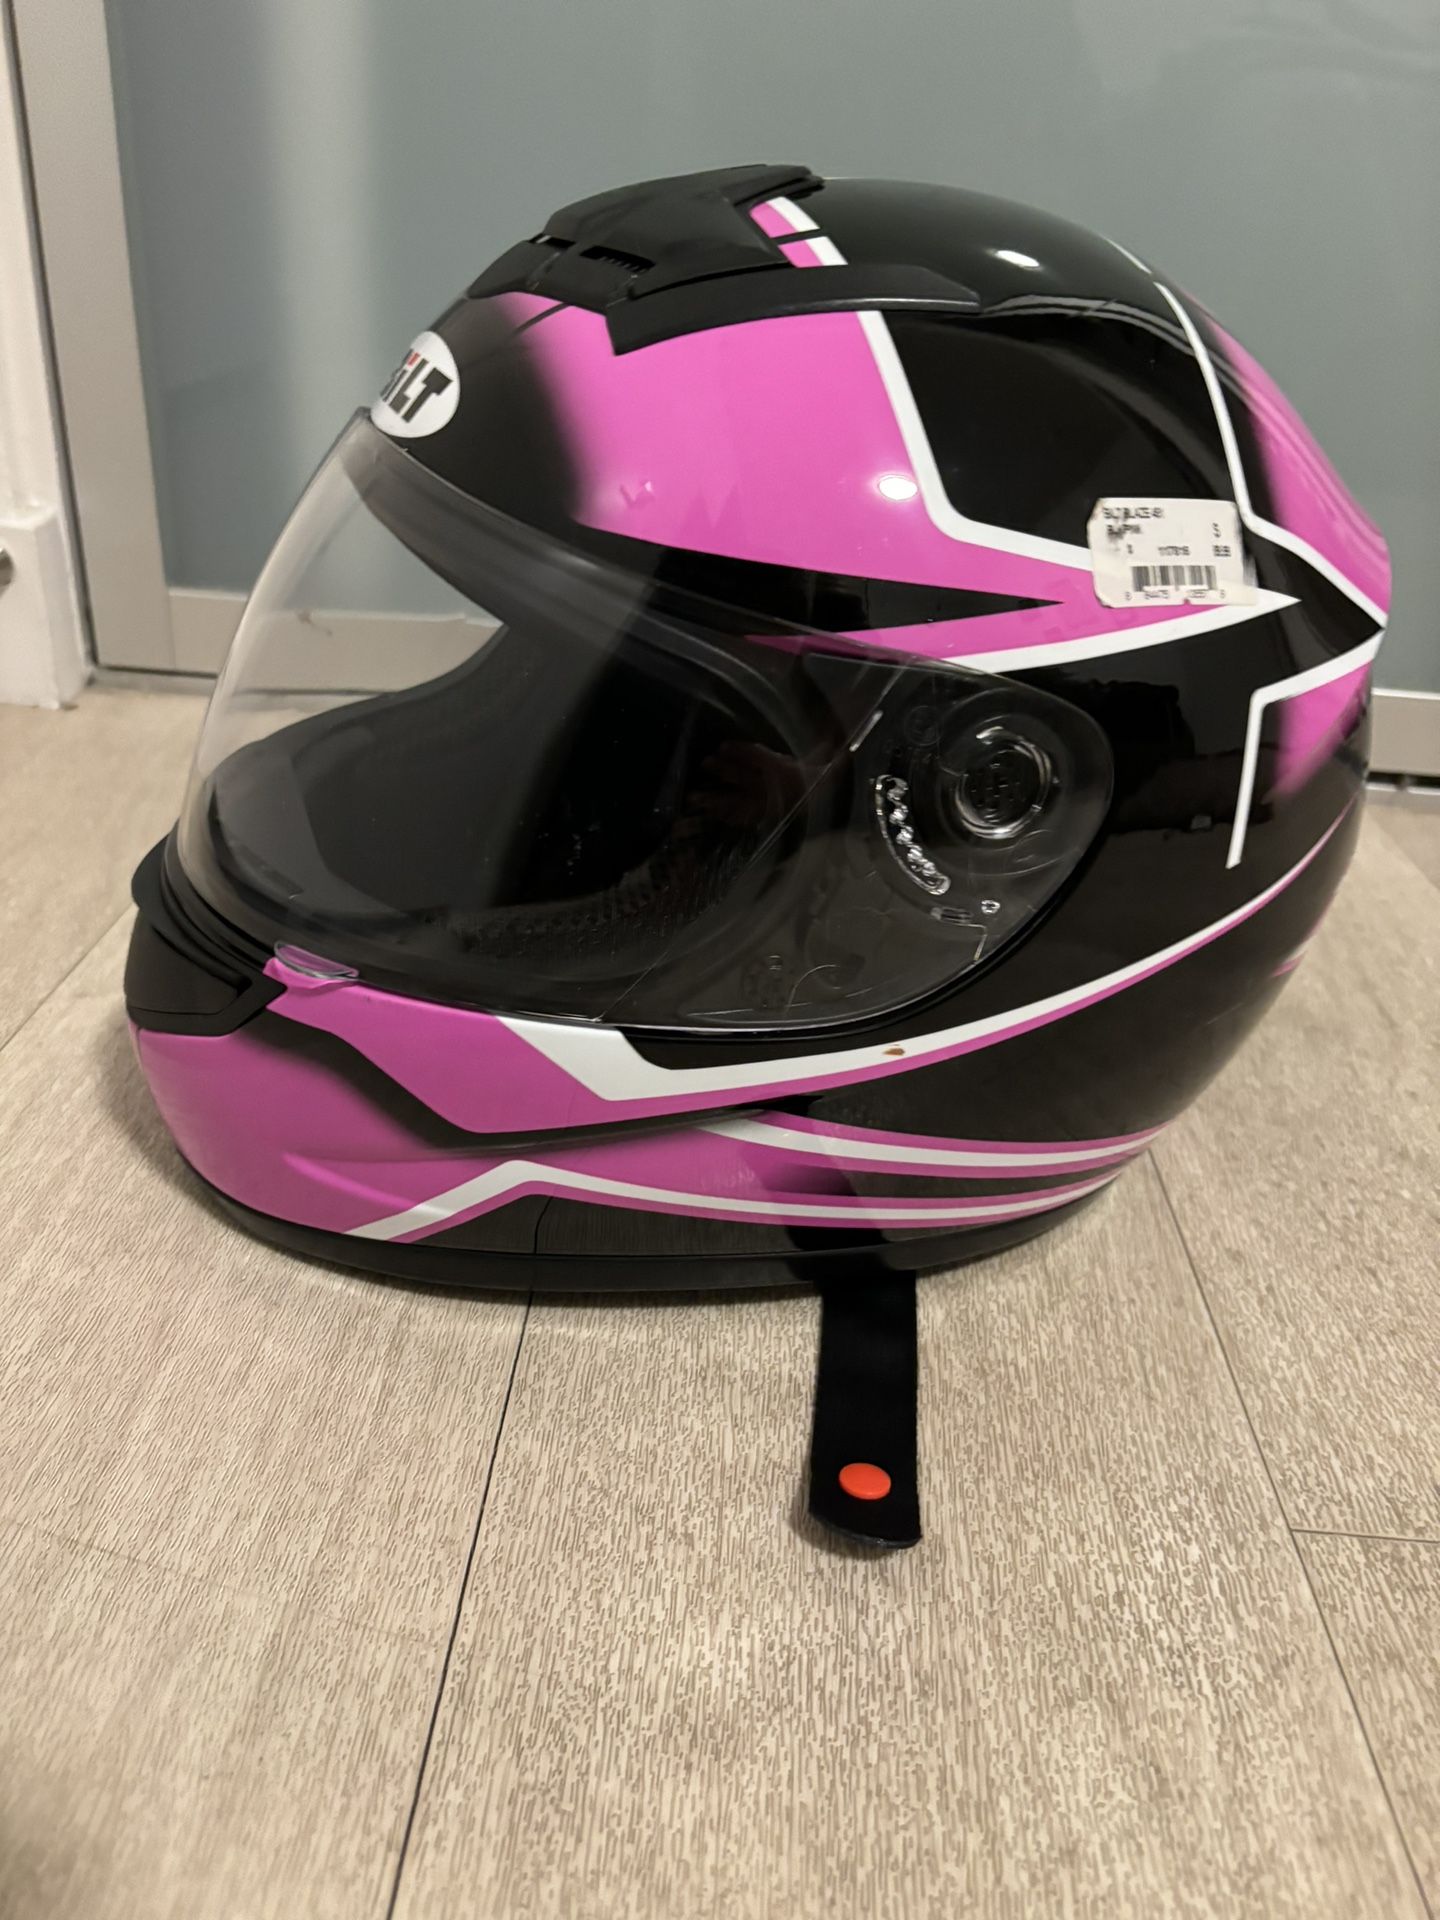 Women’s Motorcycle Helmet And Jacket